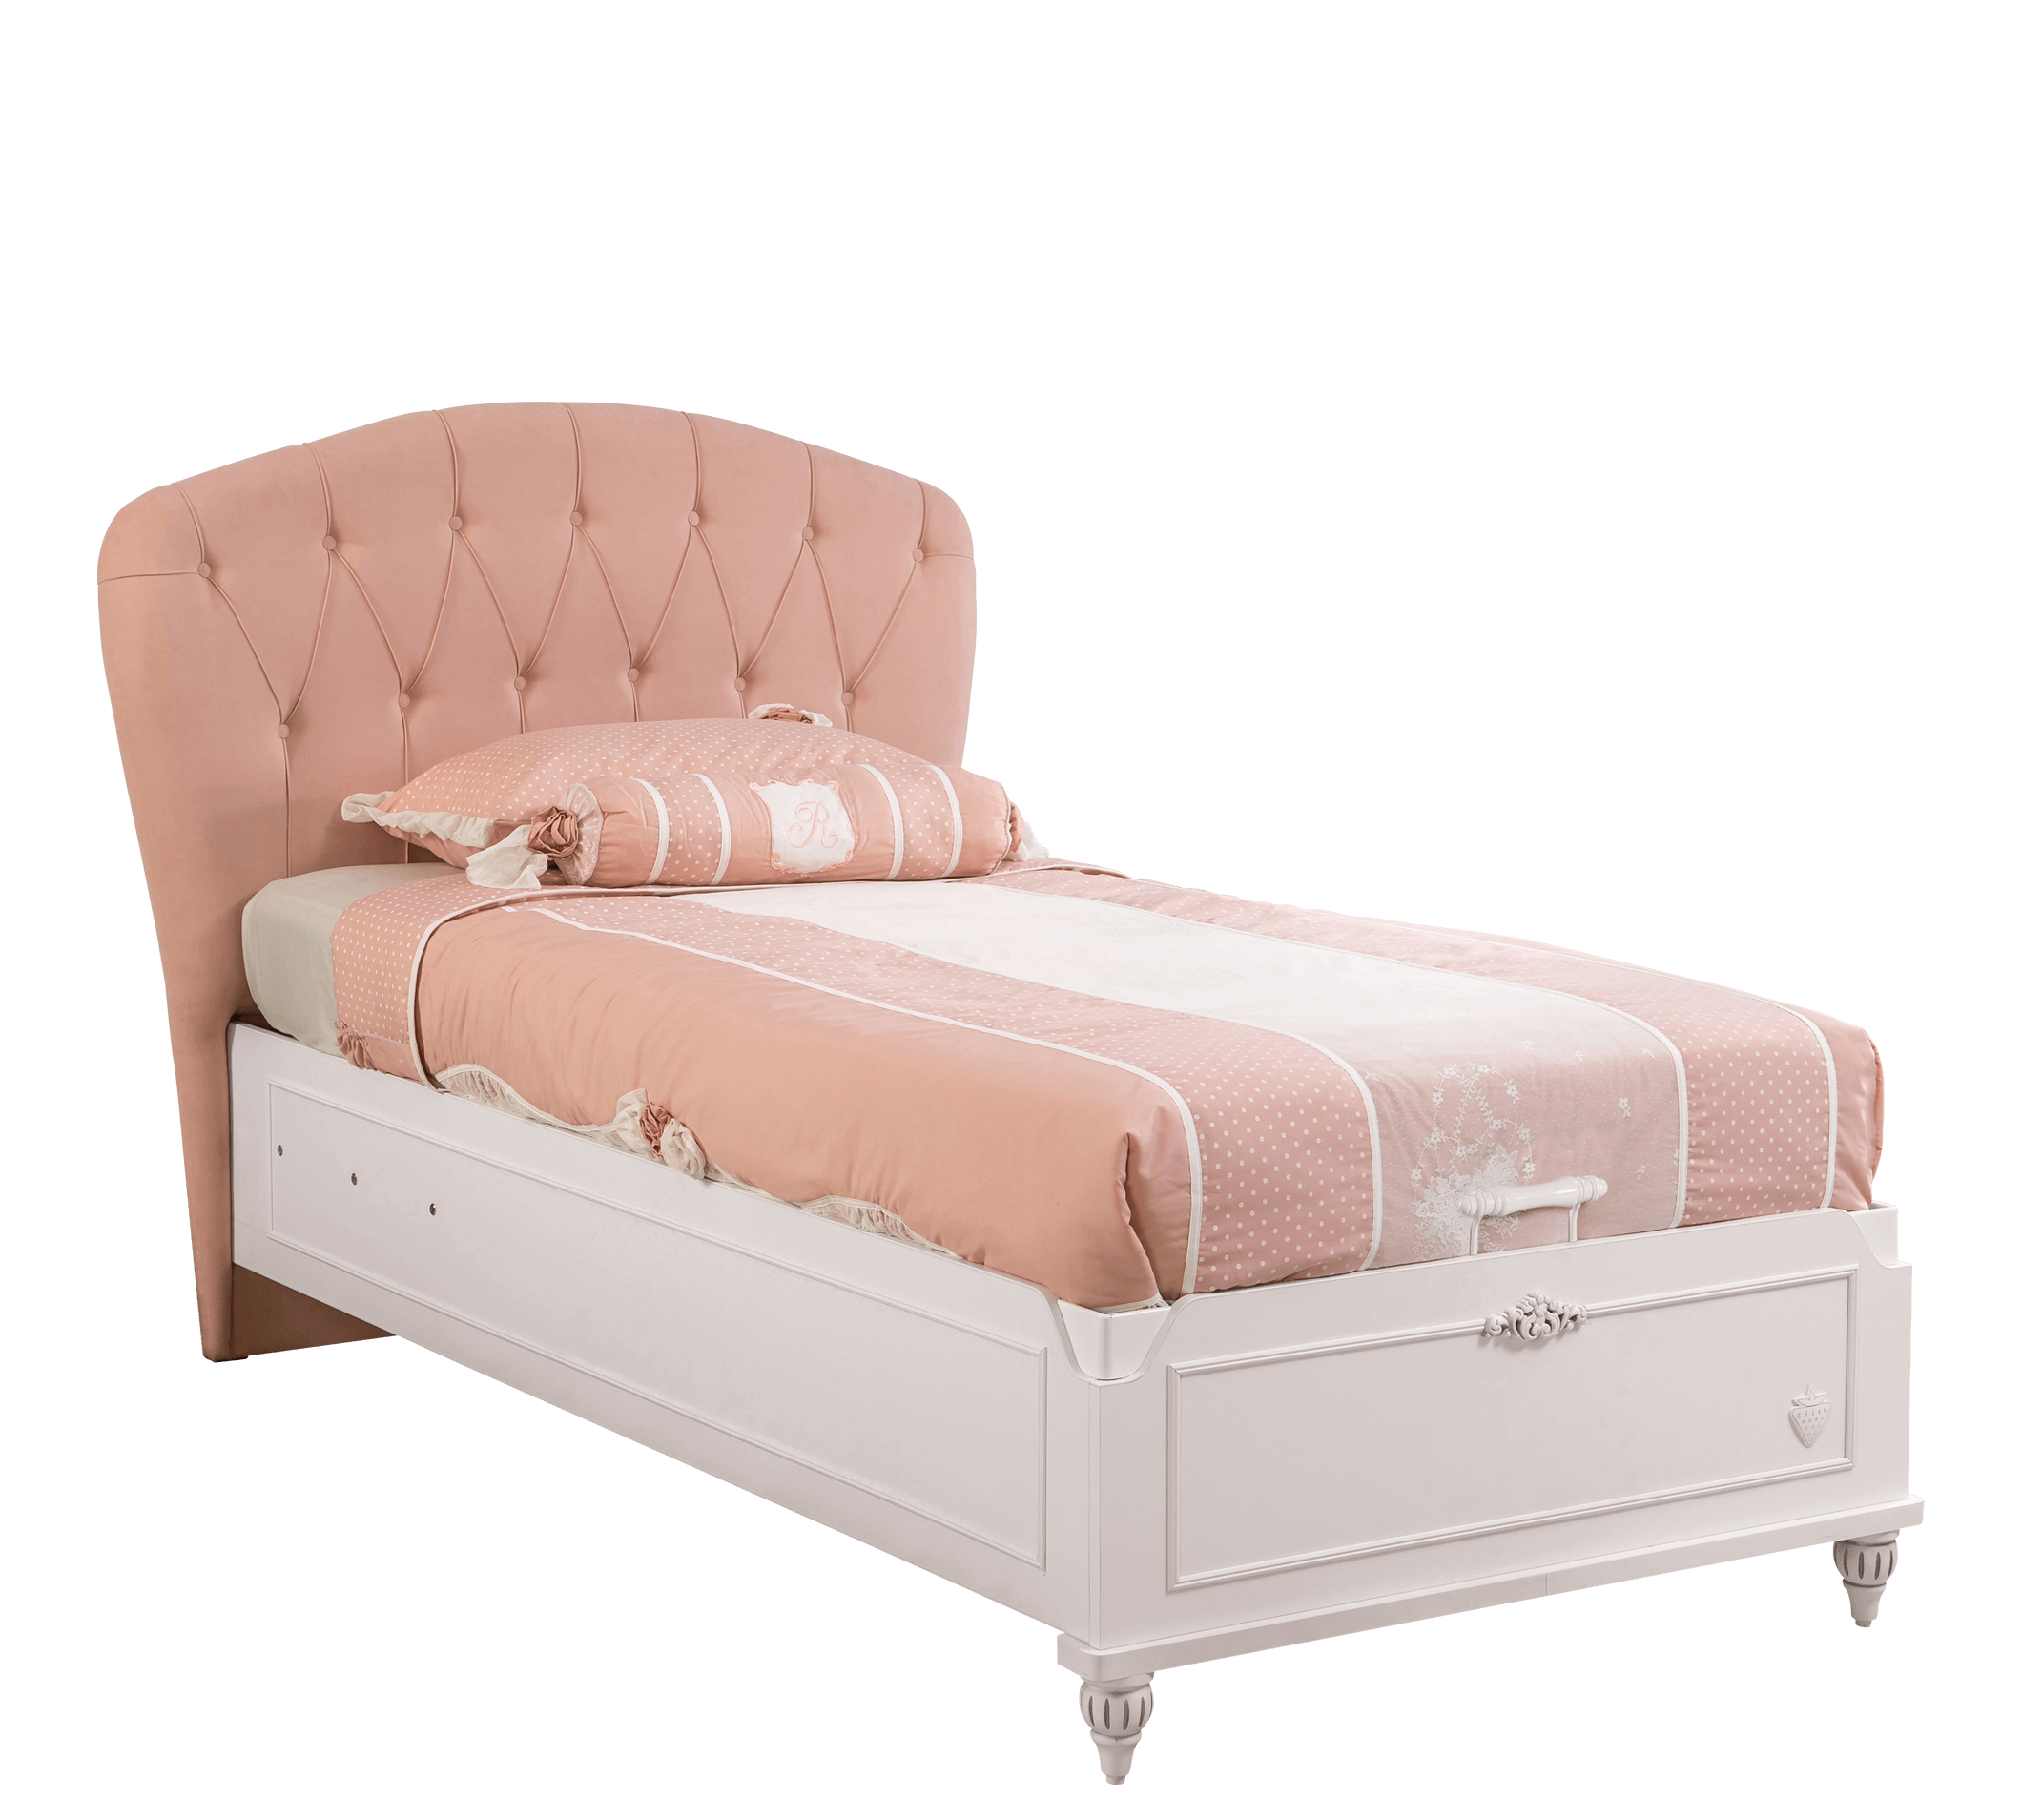 Romantic Cilek opbergbed meisjes bed roze hoofdbord, wit meisjesbed 100x200, inspiratie prinsessenbed roze, complete meisjeskamer inspiratie, complete prinsessenkamer kopen